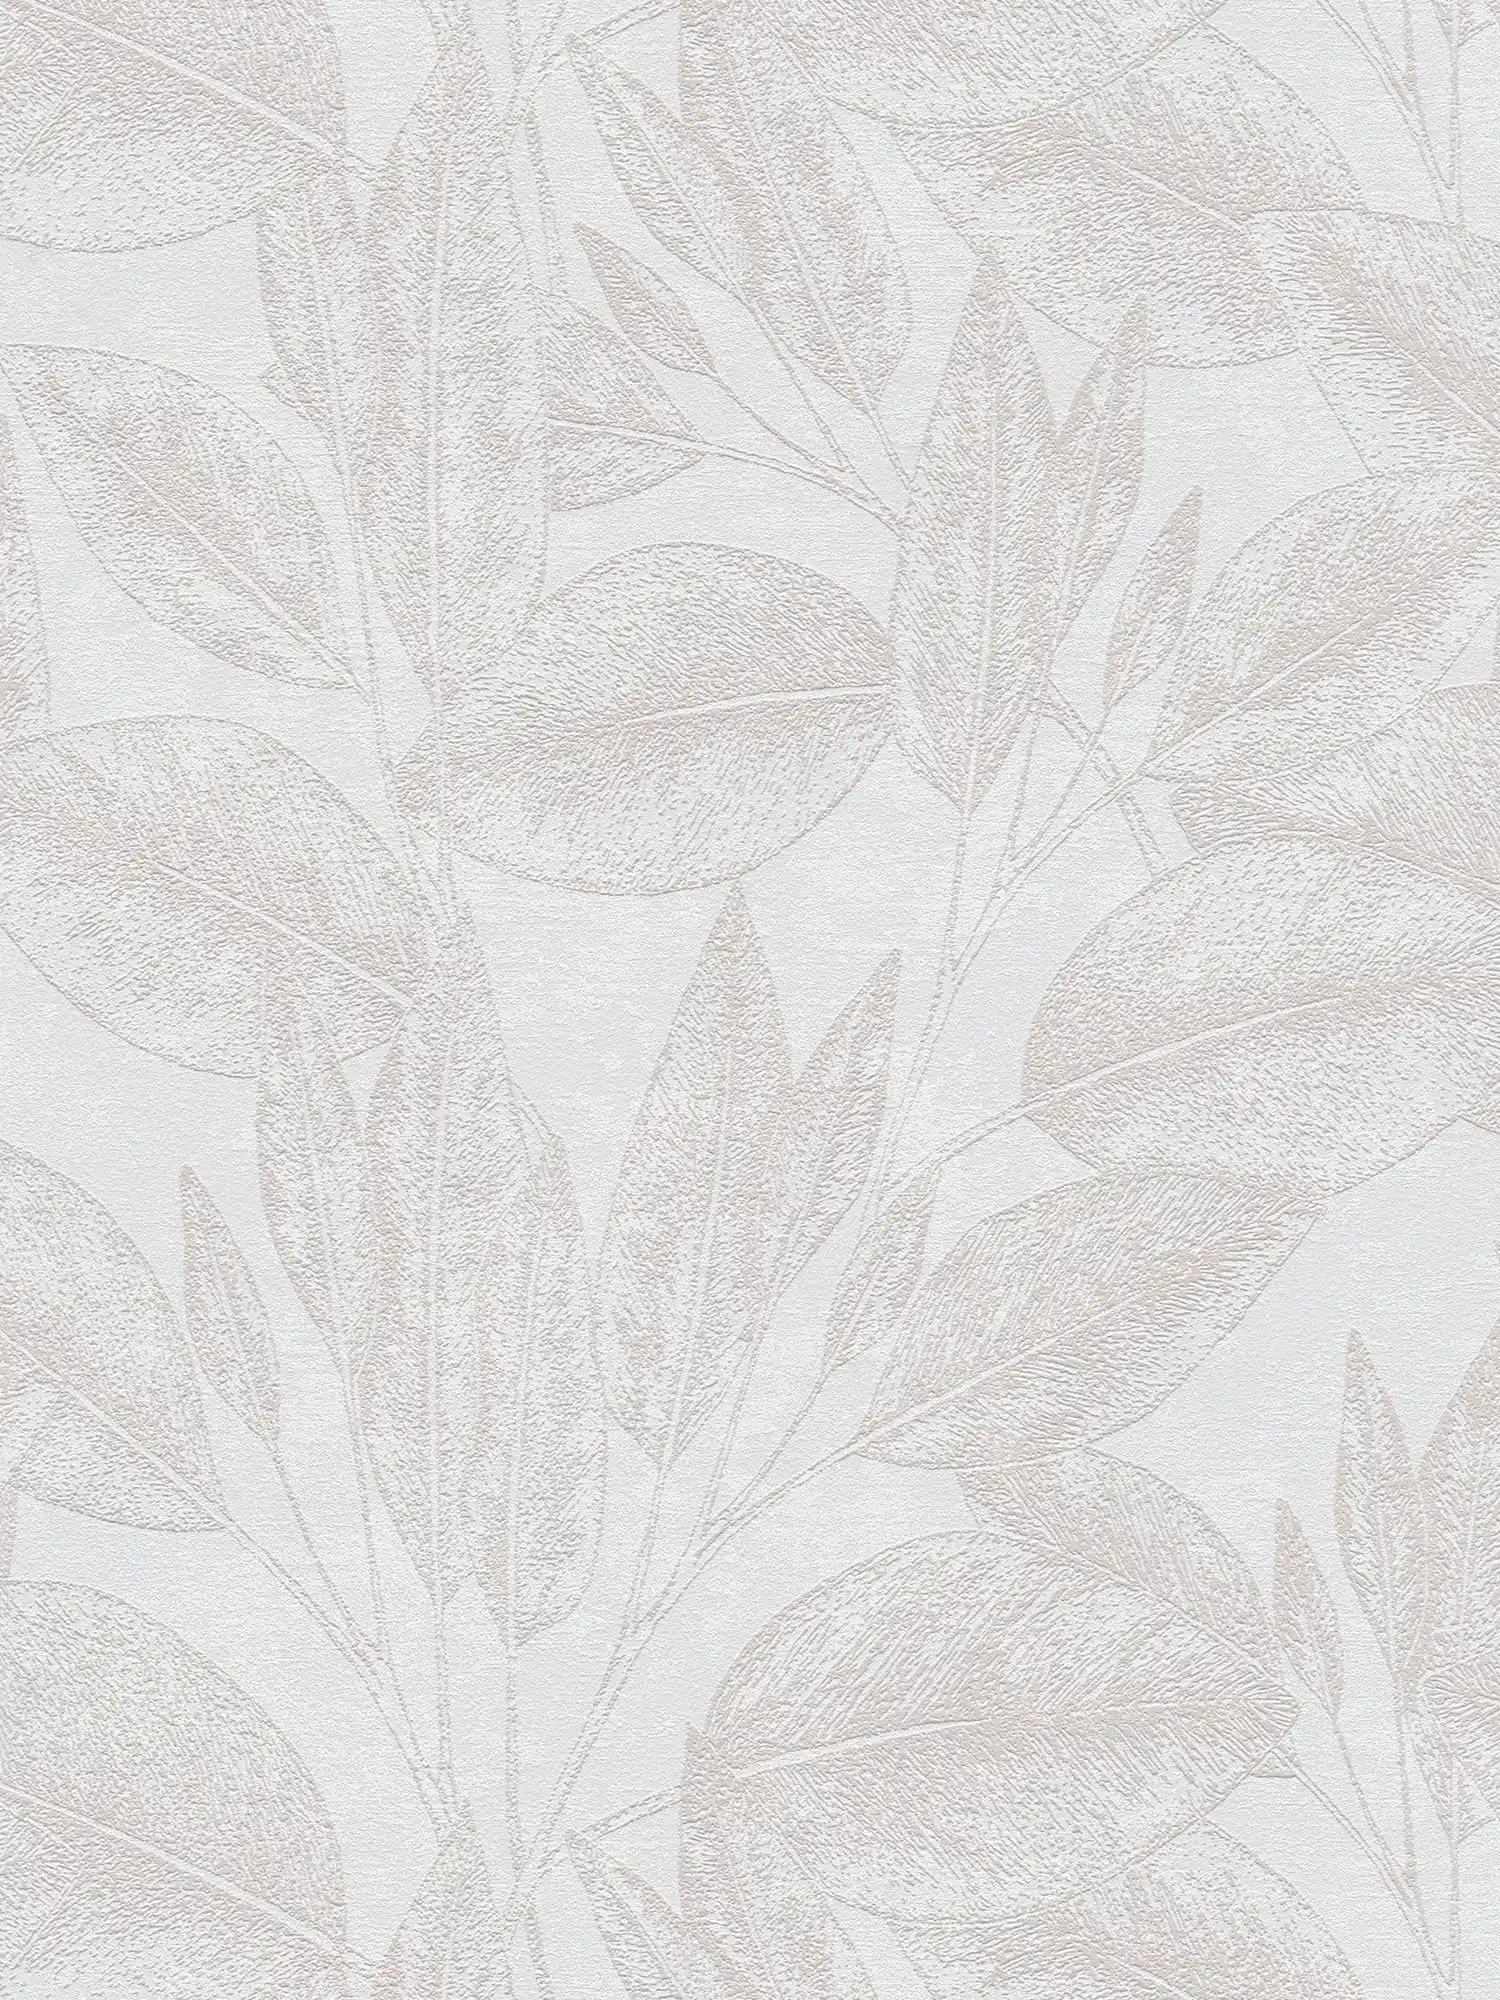 Papel pintado con motivo de hojas de aspecto vintage - Beige
